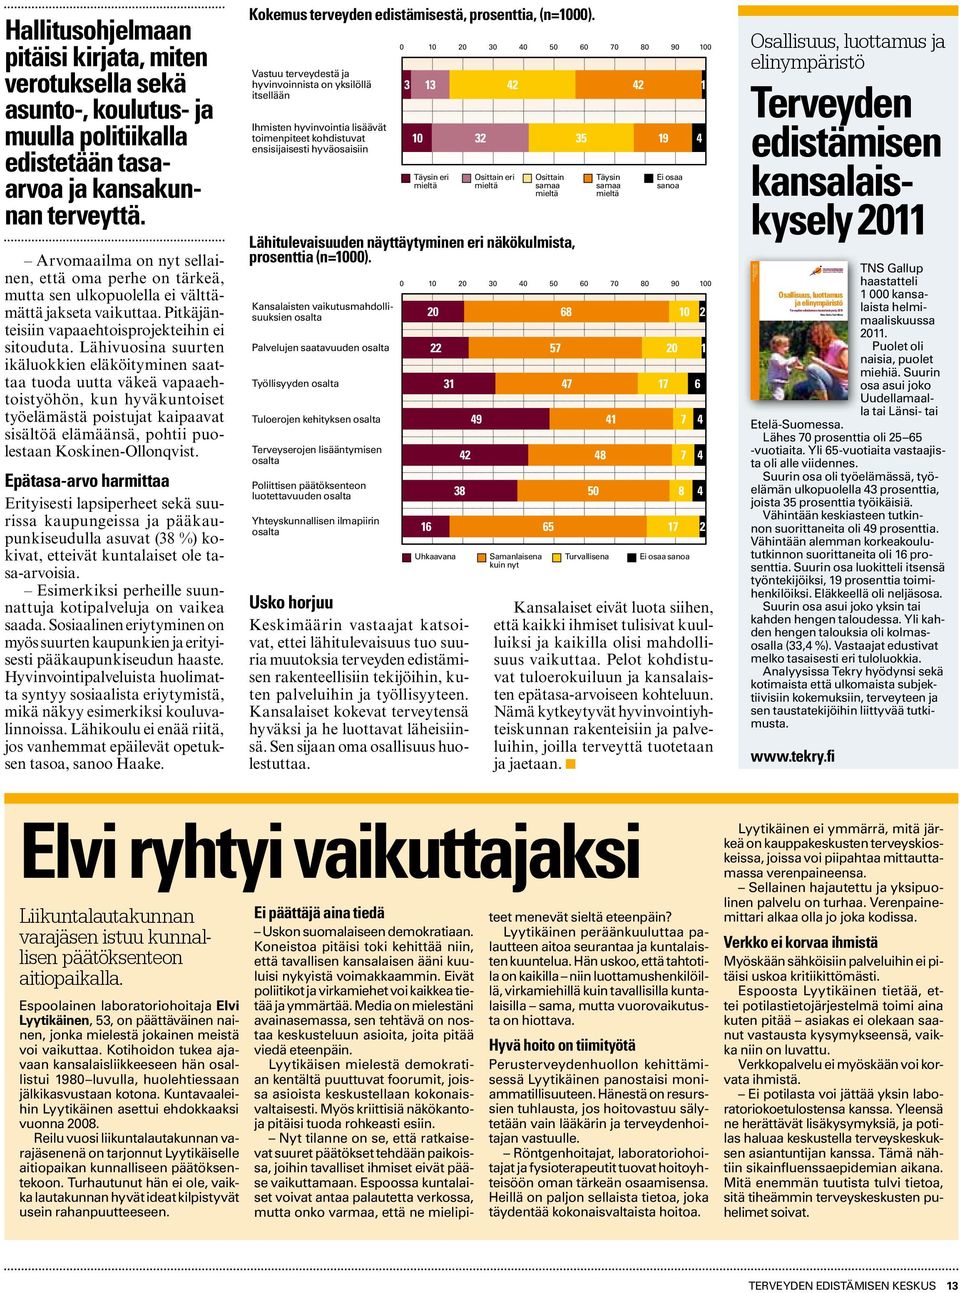 Kansalaiskyselyyn vastasi tuhat suomalaista helmi maaliskuussa 2011. Terveyden edistämisen keskus on julkaissut vuosittaisia katsauksia terveyden edistämisen tilaan jo vuodesta 1992.